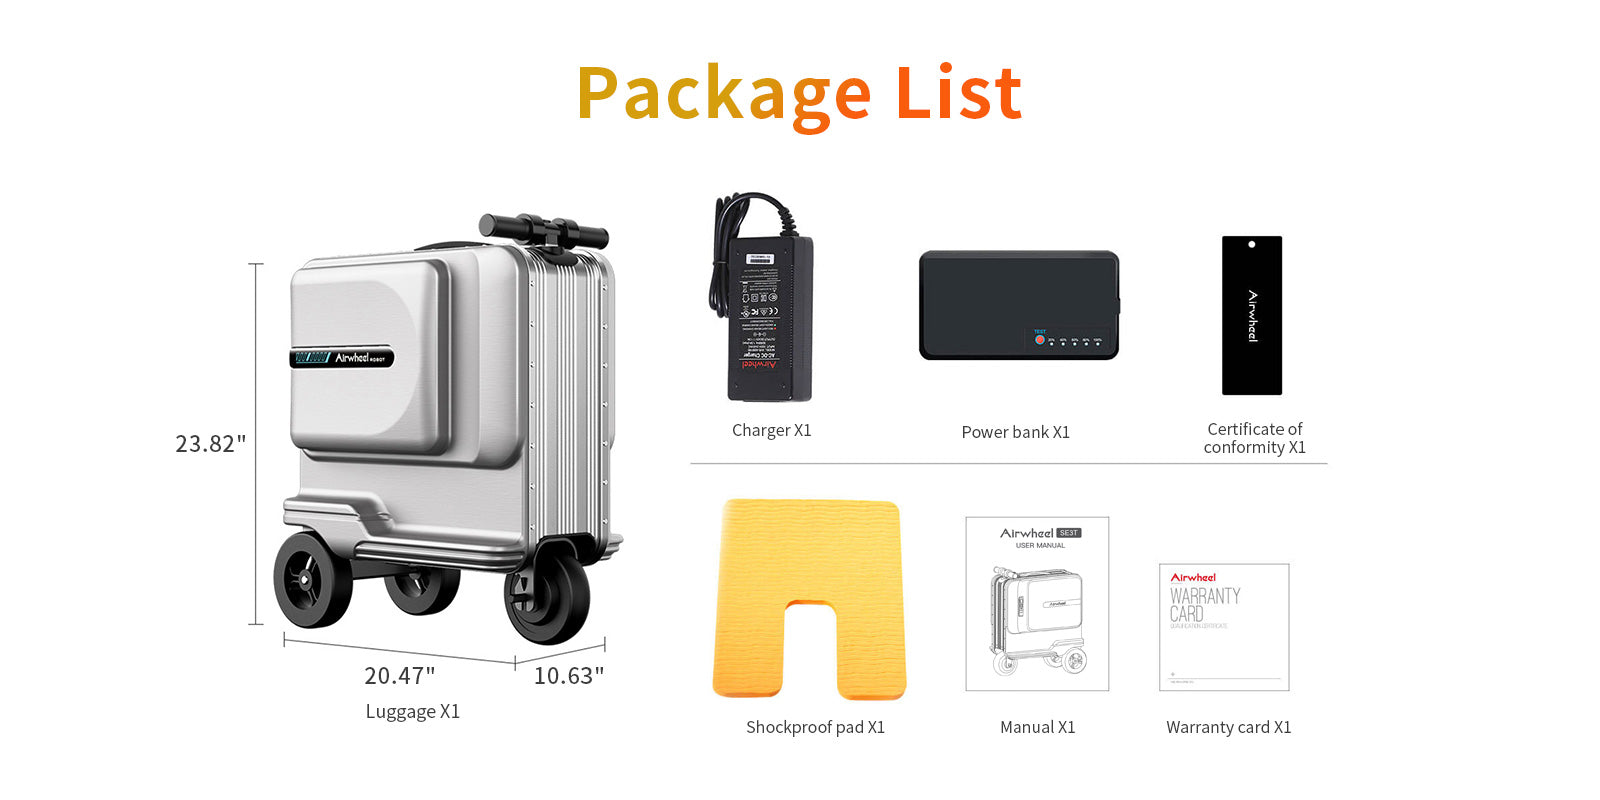 Airwheel-SE3-T-Smart-Suitcase-Packing-List-Contents-Desktop-015